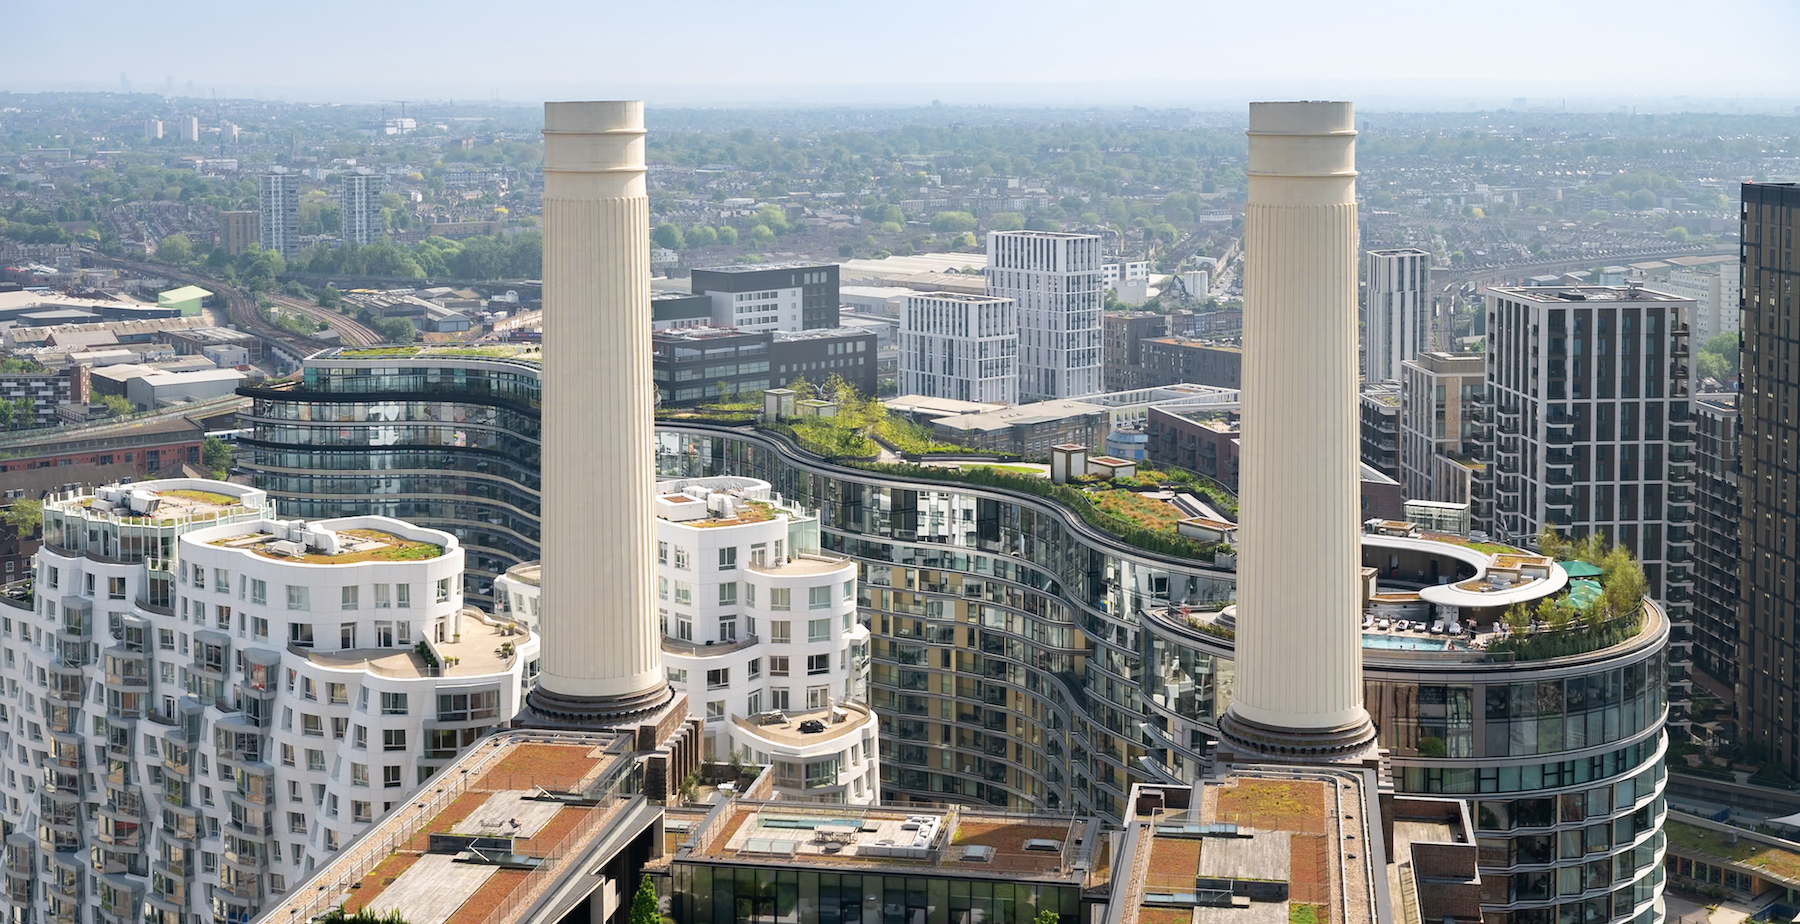 Two new buildings near Battersea Power Station